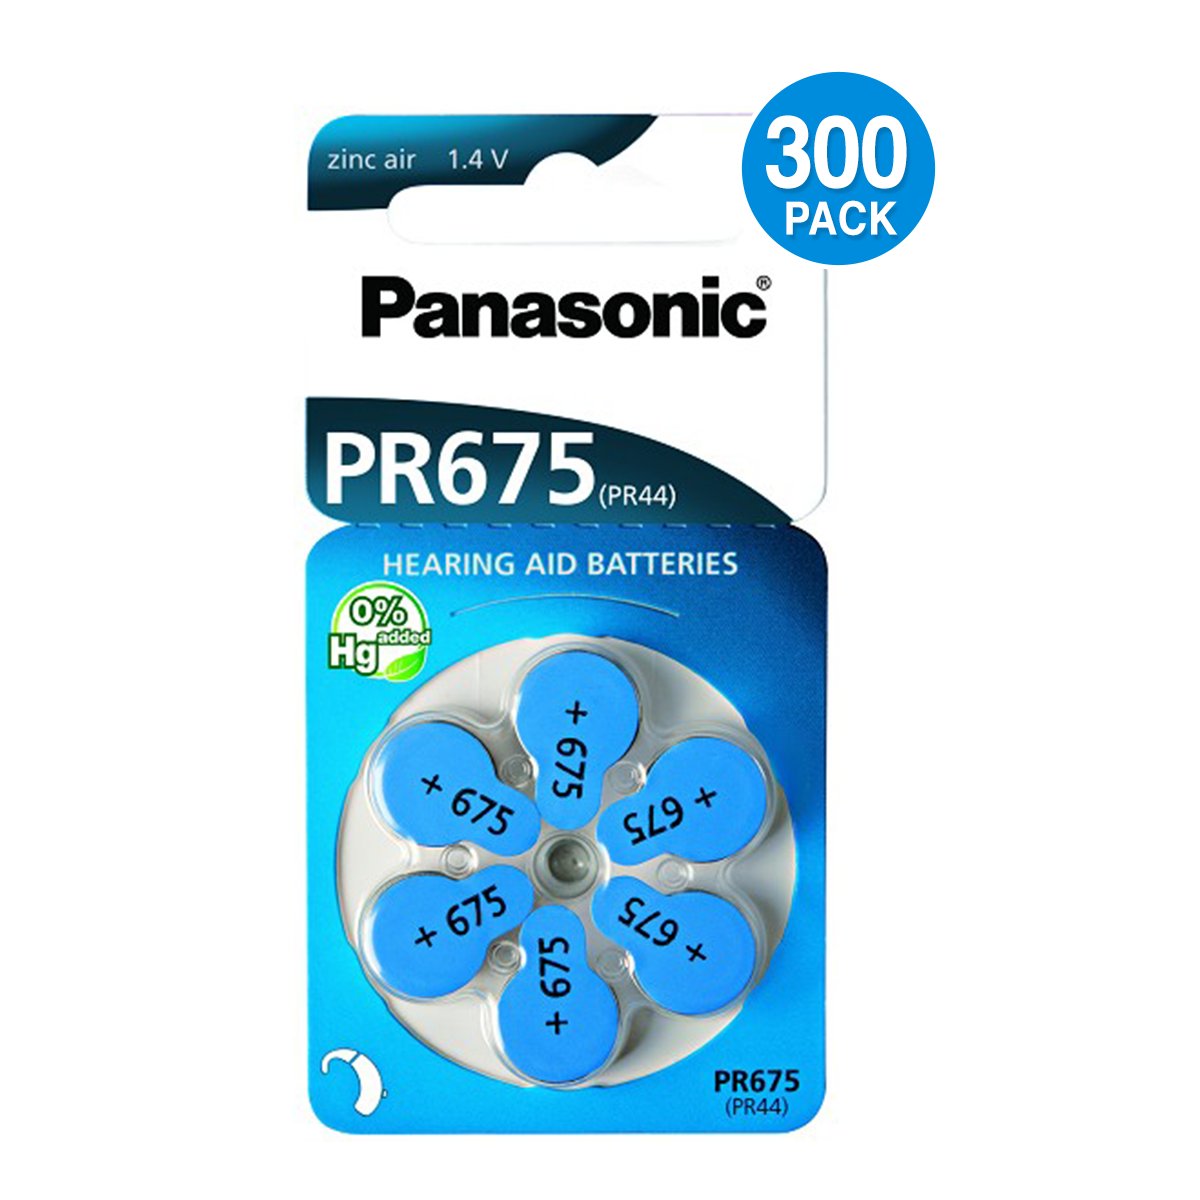 Panasonic Size 675 Hearing Aid Battery (300 pcs.)